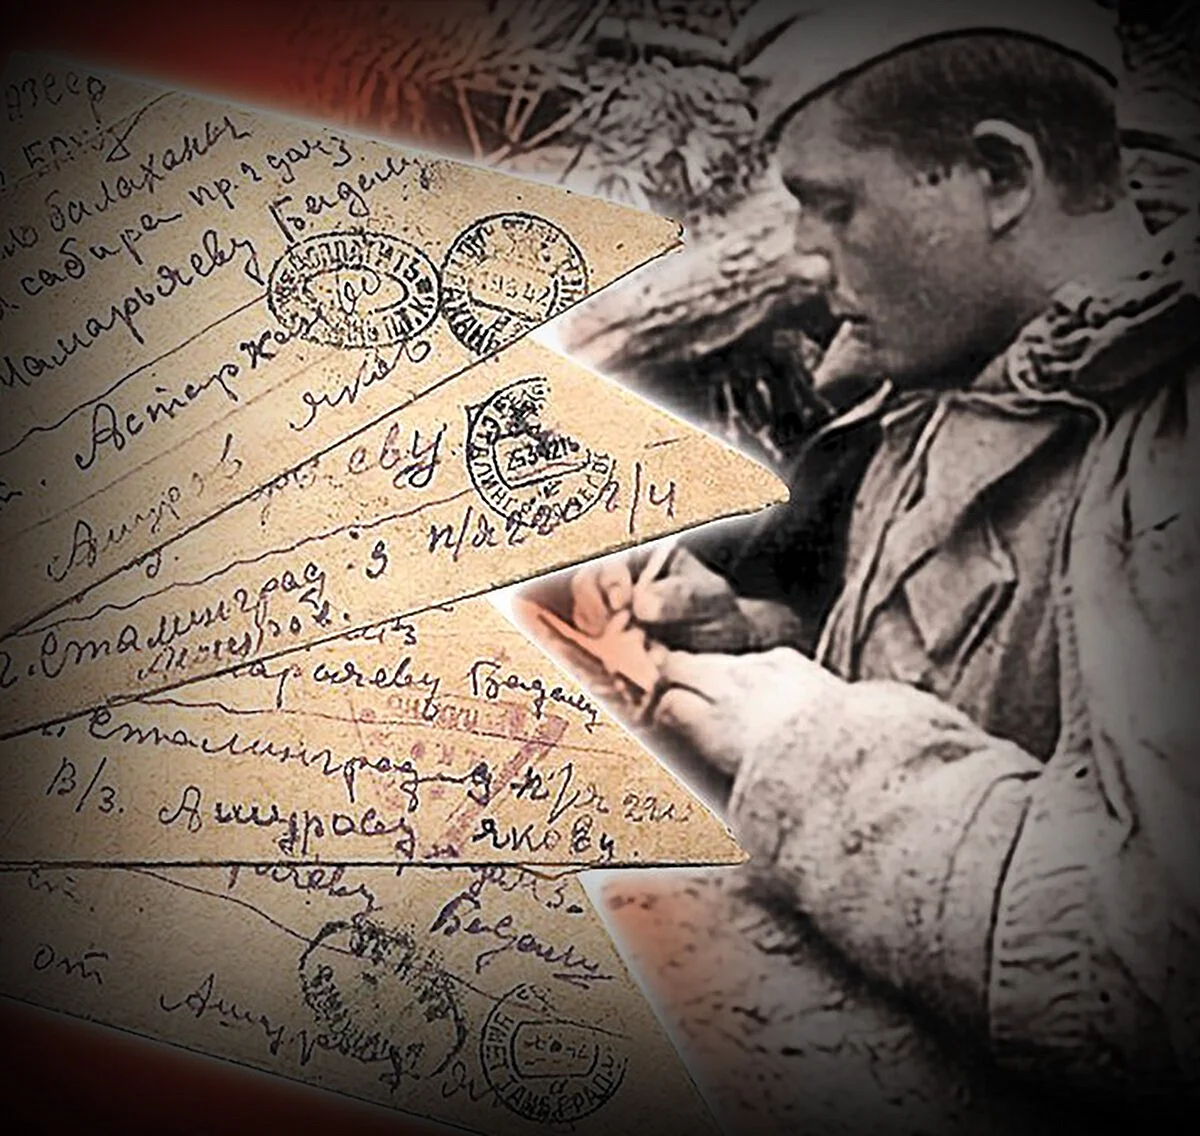 Письма с фронта Великой Отечественной войны